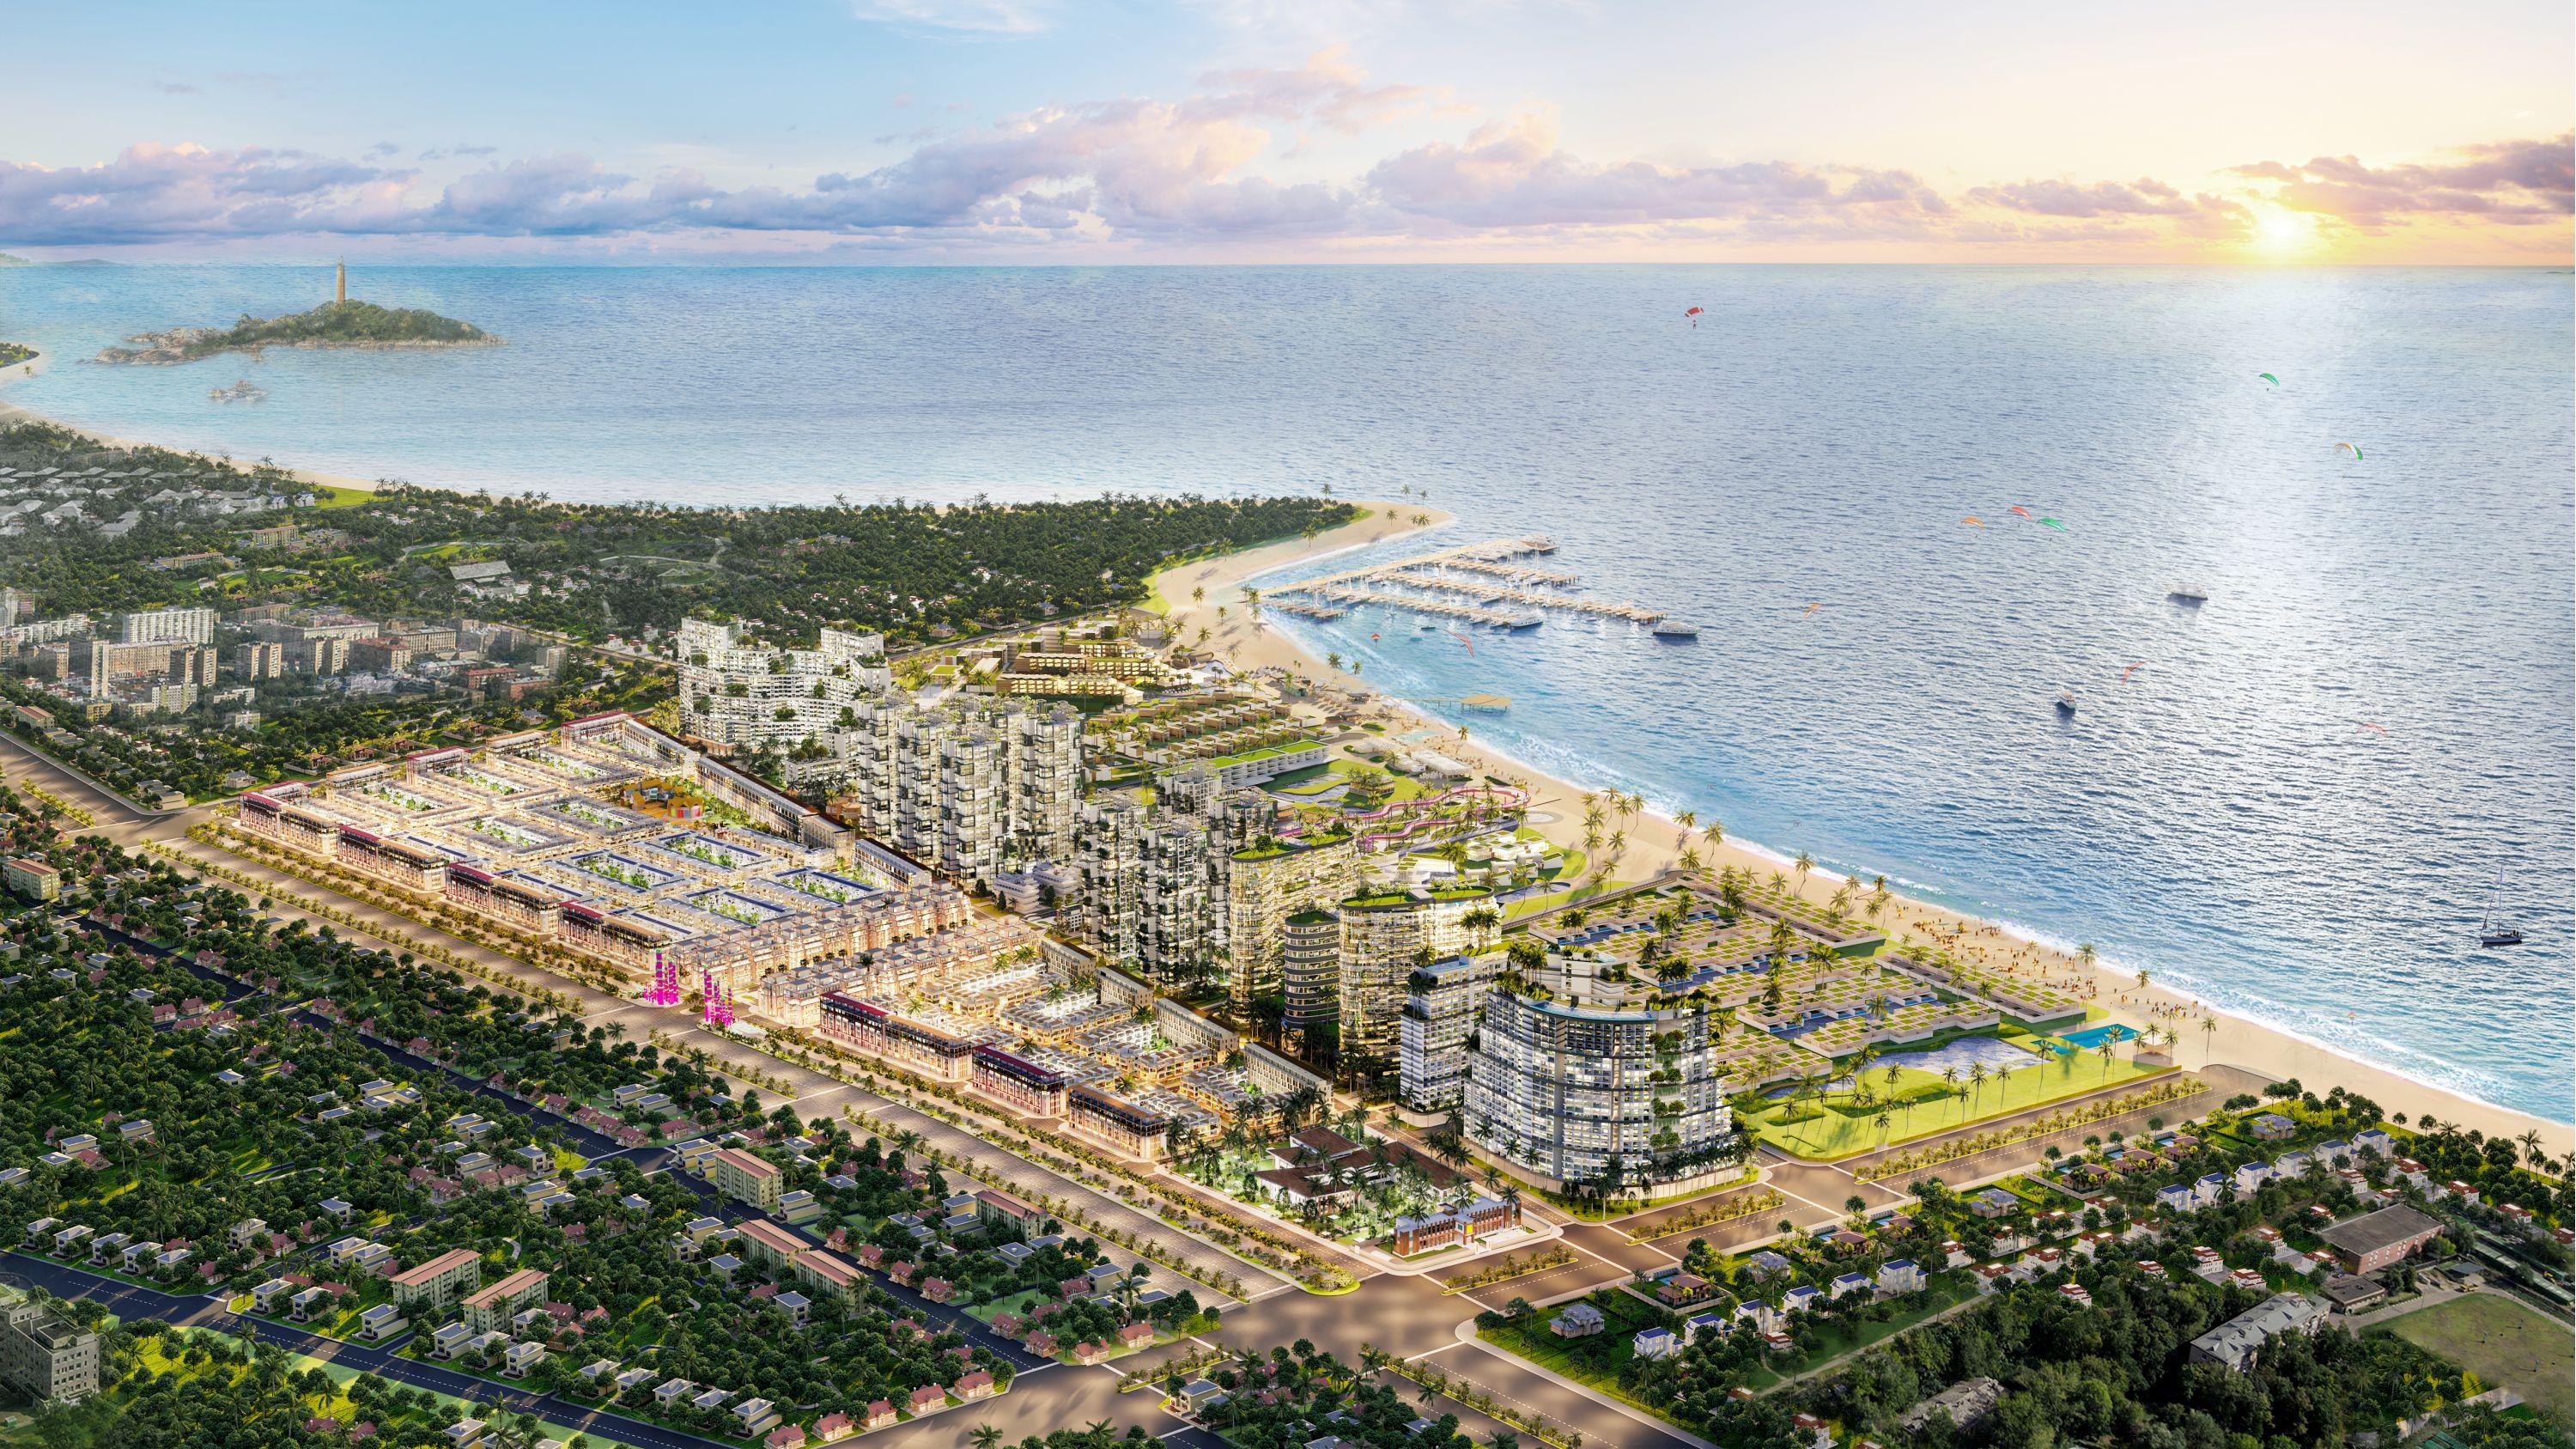 Nhà phố biển trong siêu quần thể Thanh Long Bay hấp dẫn nhà đầu tư dịp cuối năm